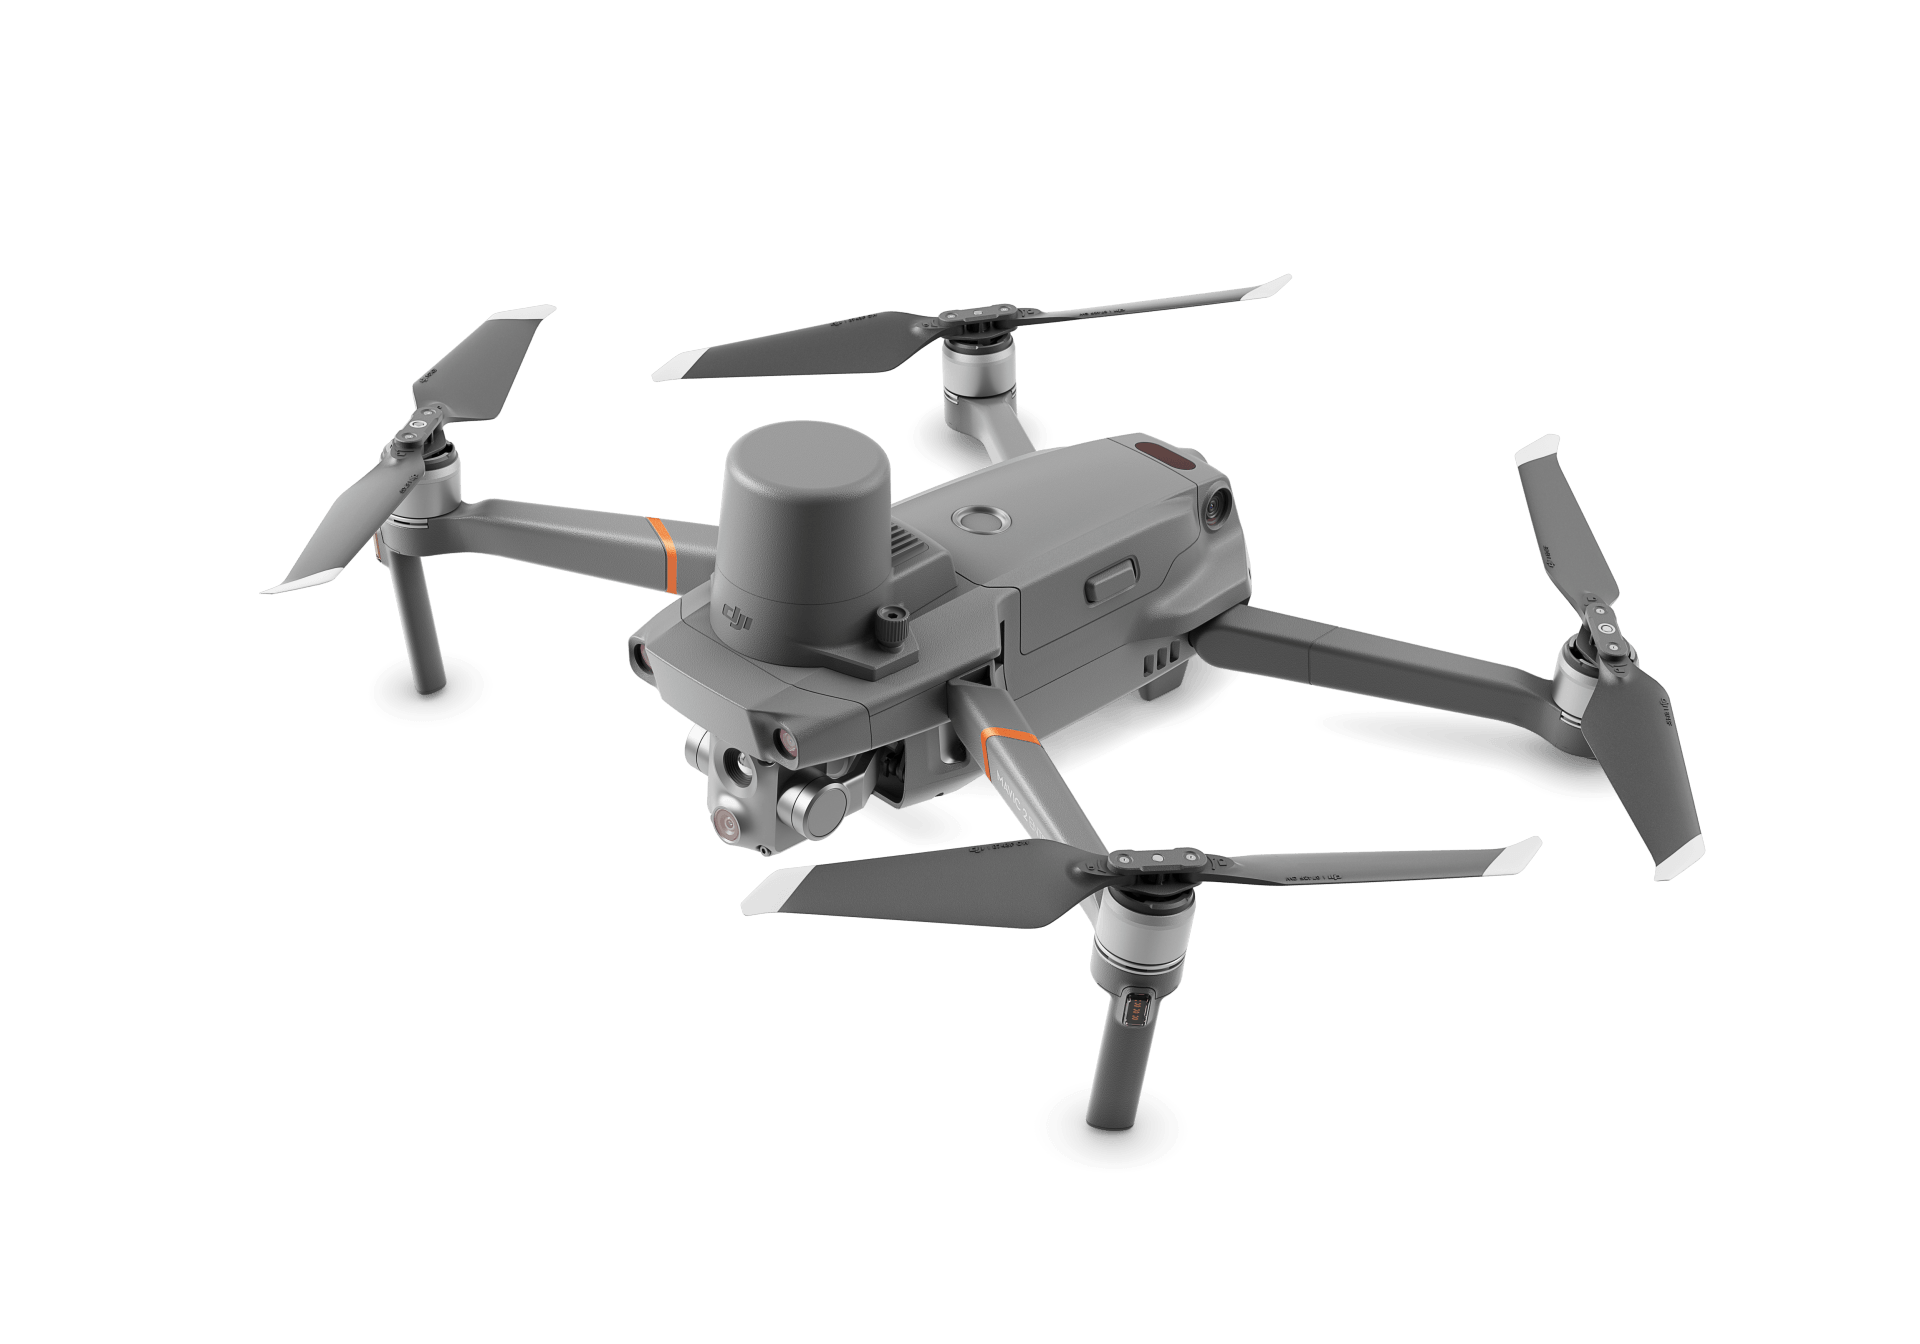 Drone especializado para búsqueda y rescate usando el sistema LiDAR